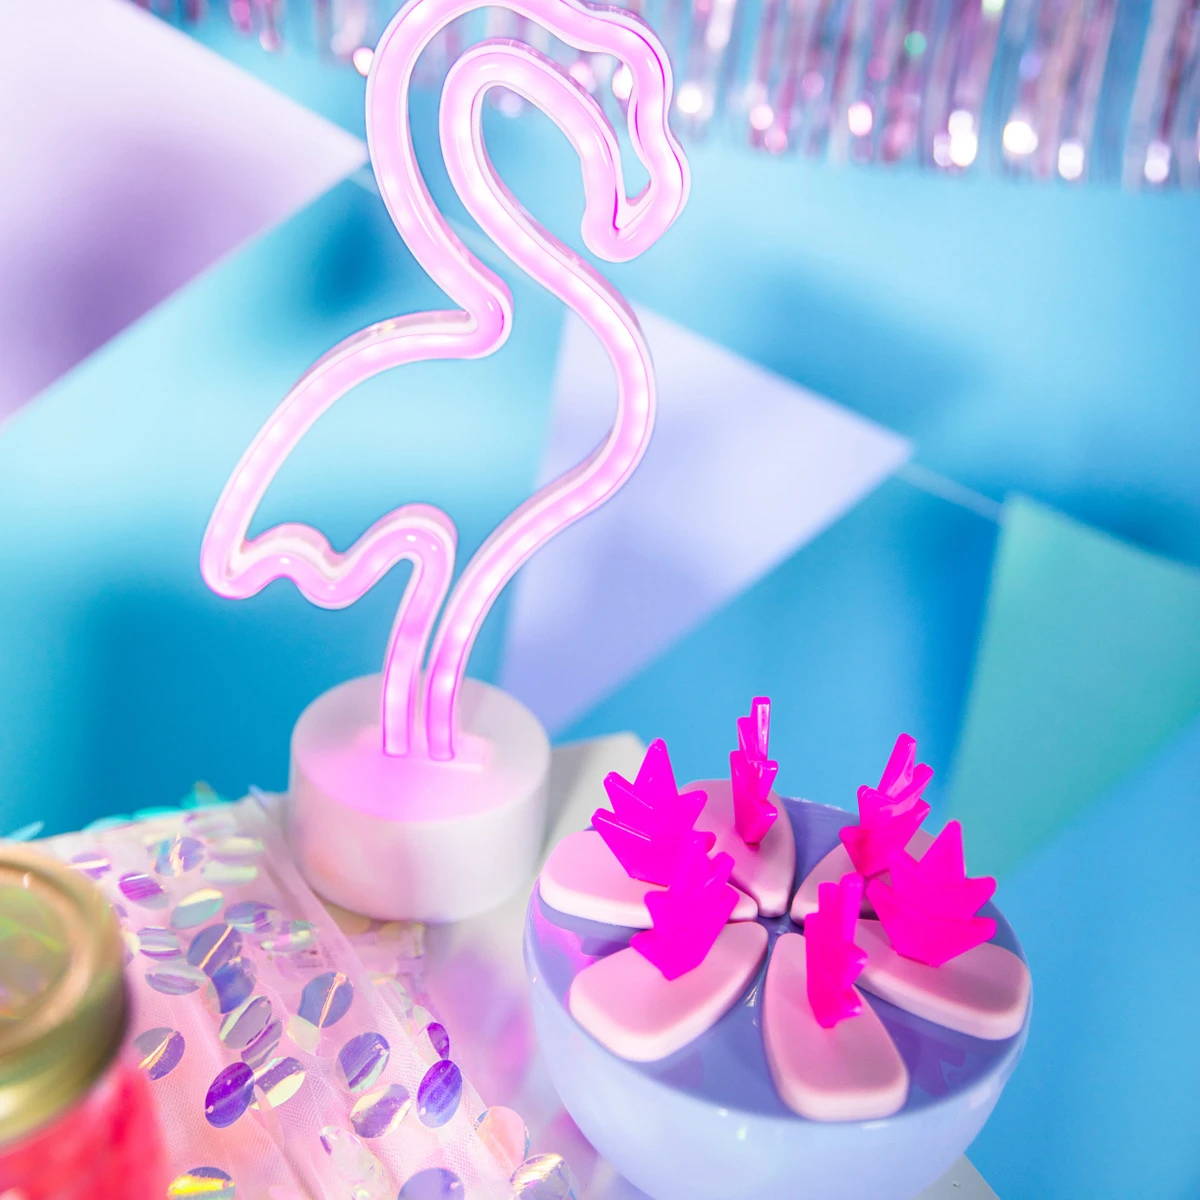 Luz de néon de flamingo ao lado de uma taça de agitadores de bebidas em forma de flamingo, adicionando um brilho cor-de-rosa vibrante ao ambiente.